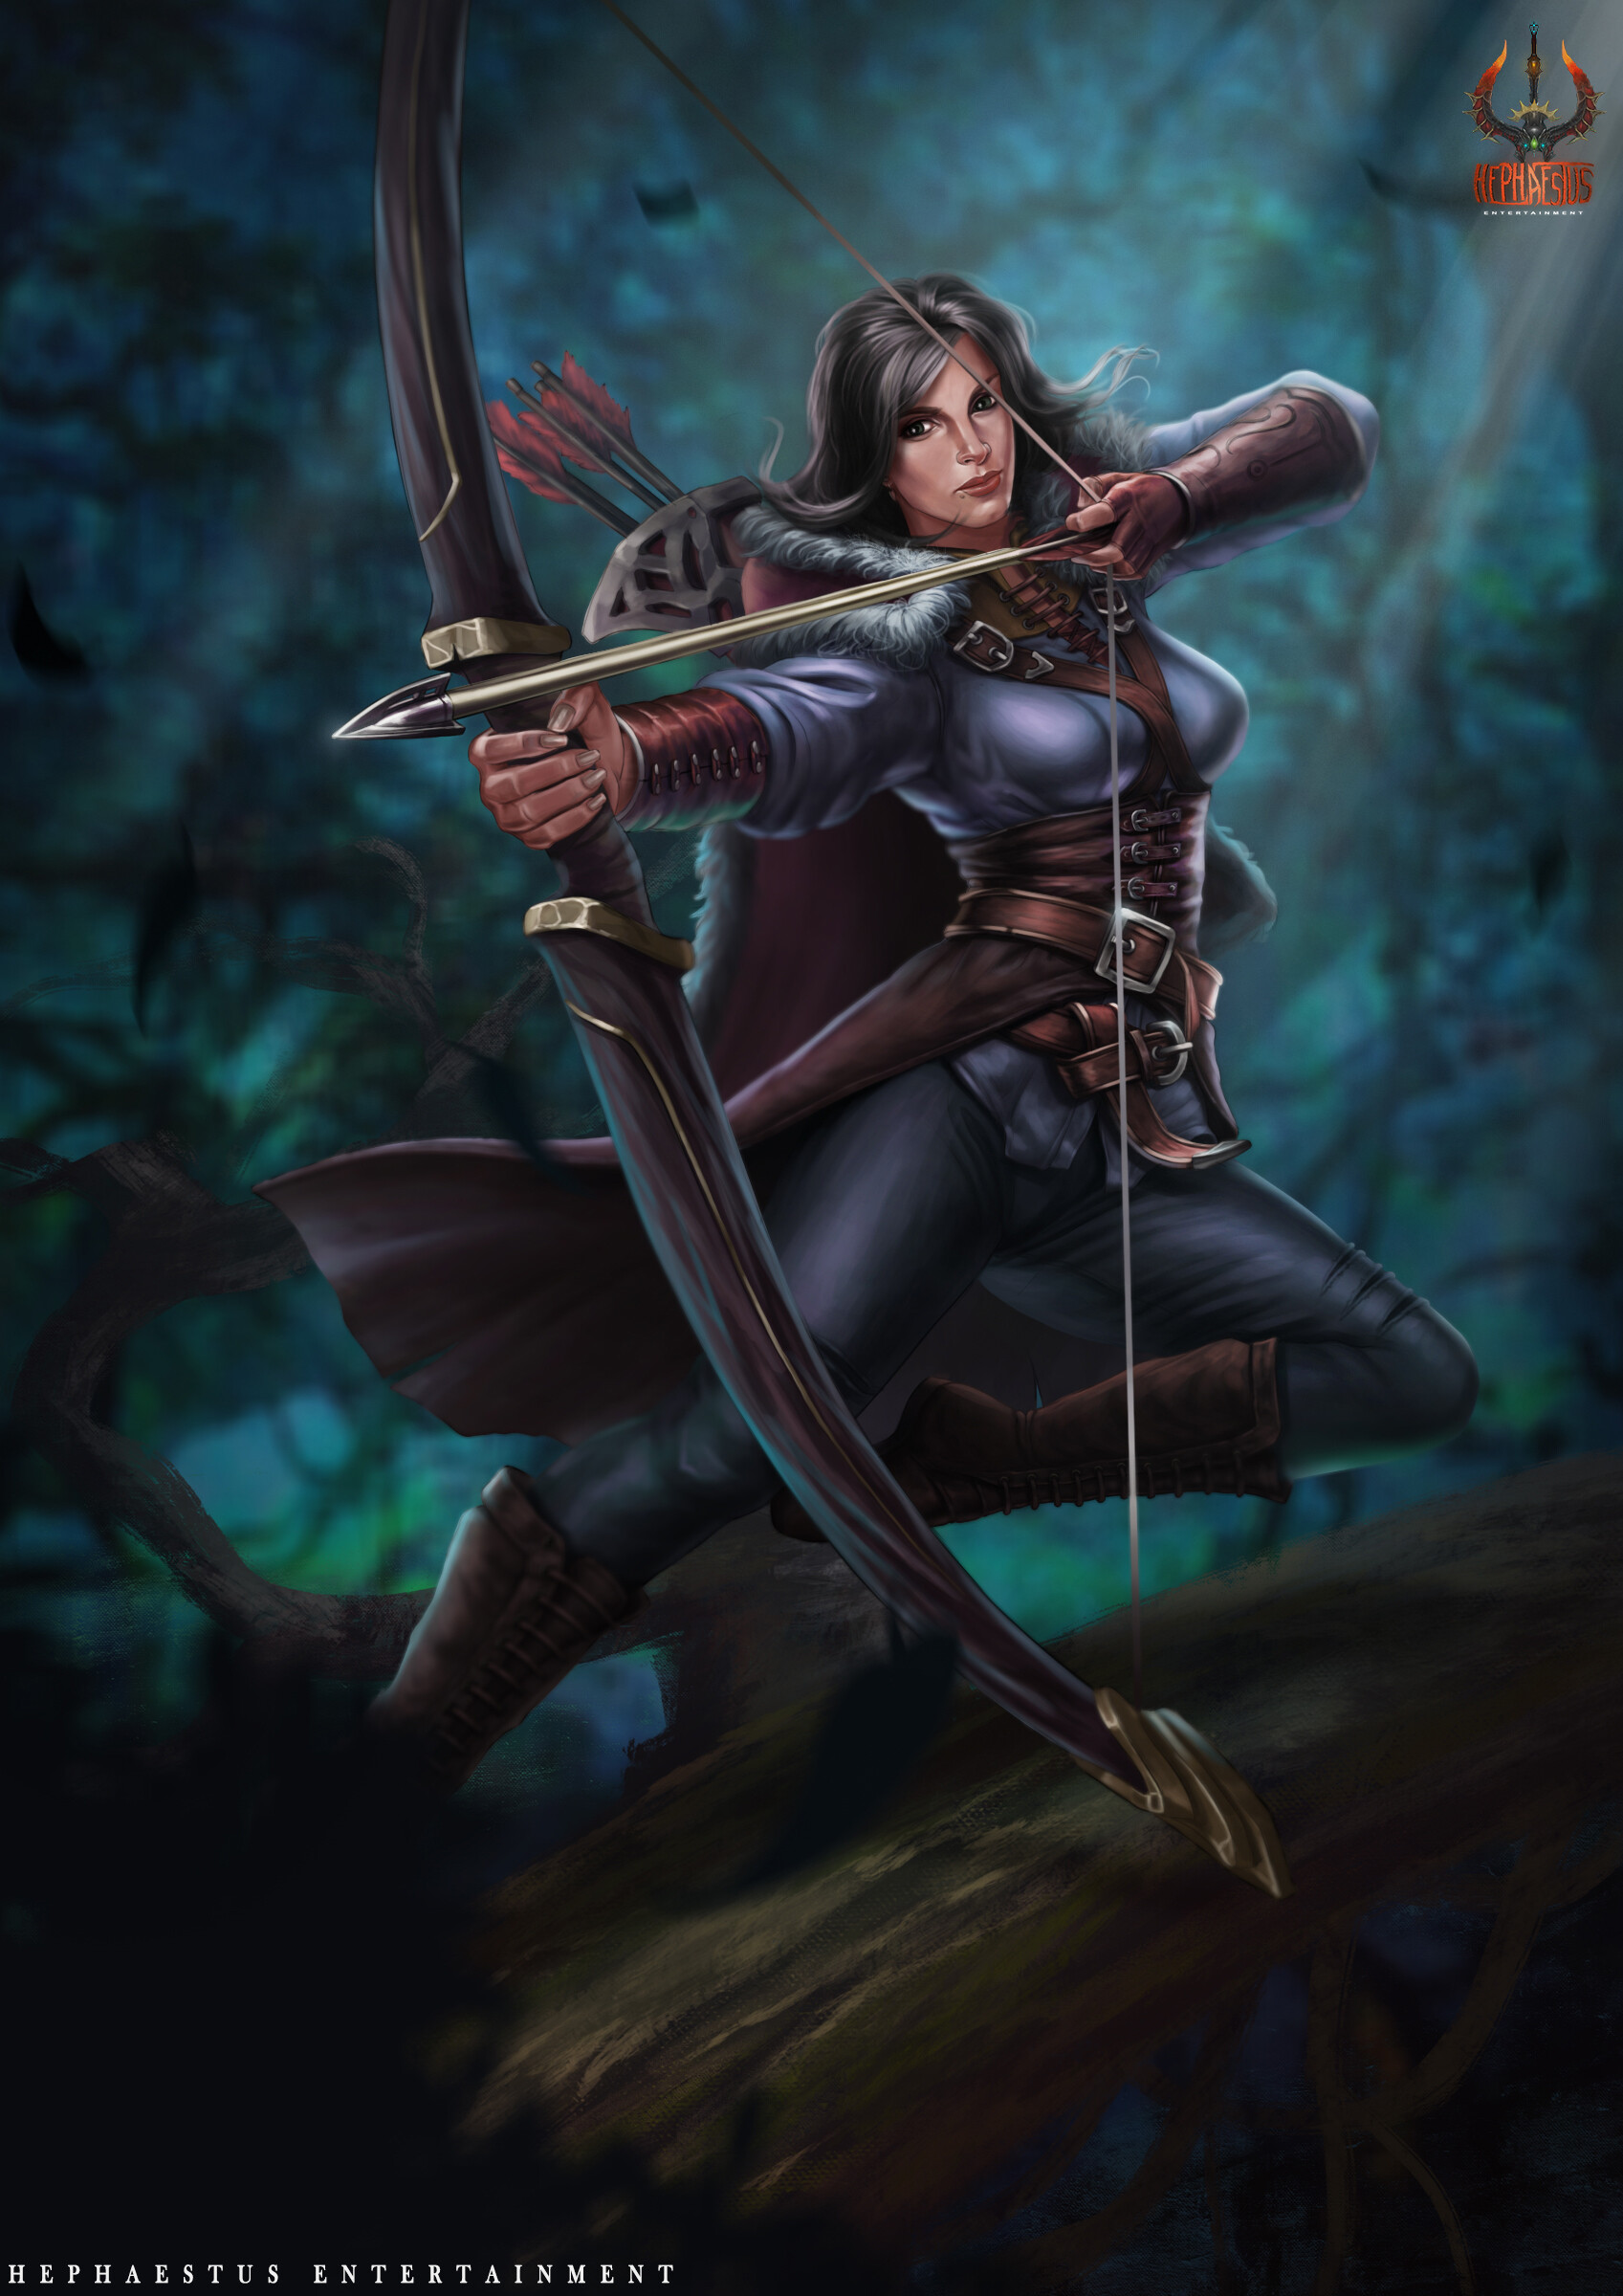 ArtStation - Female Archer